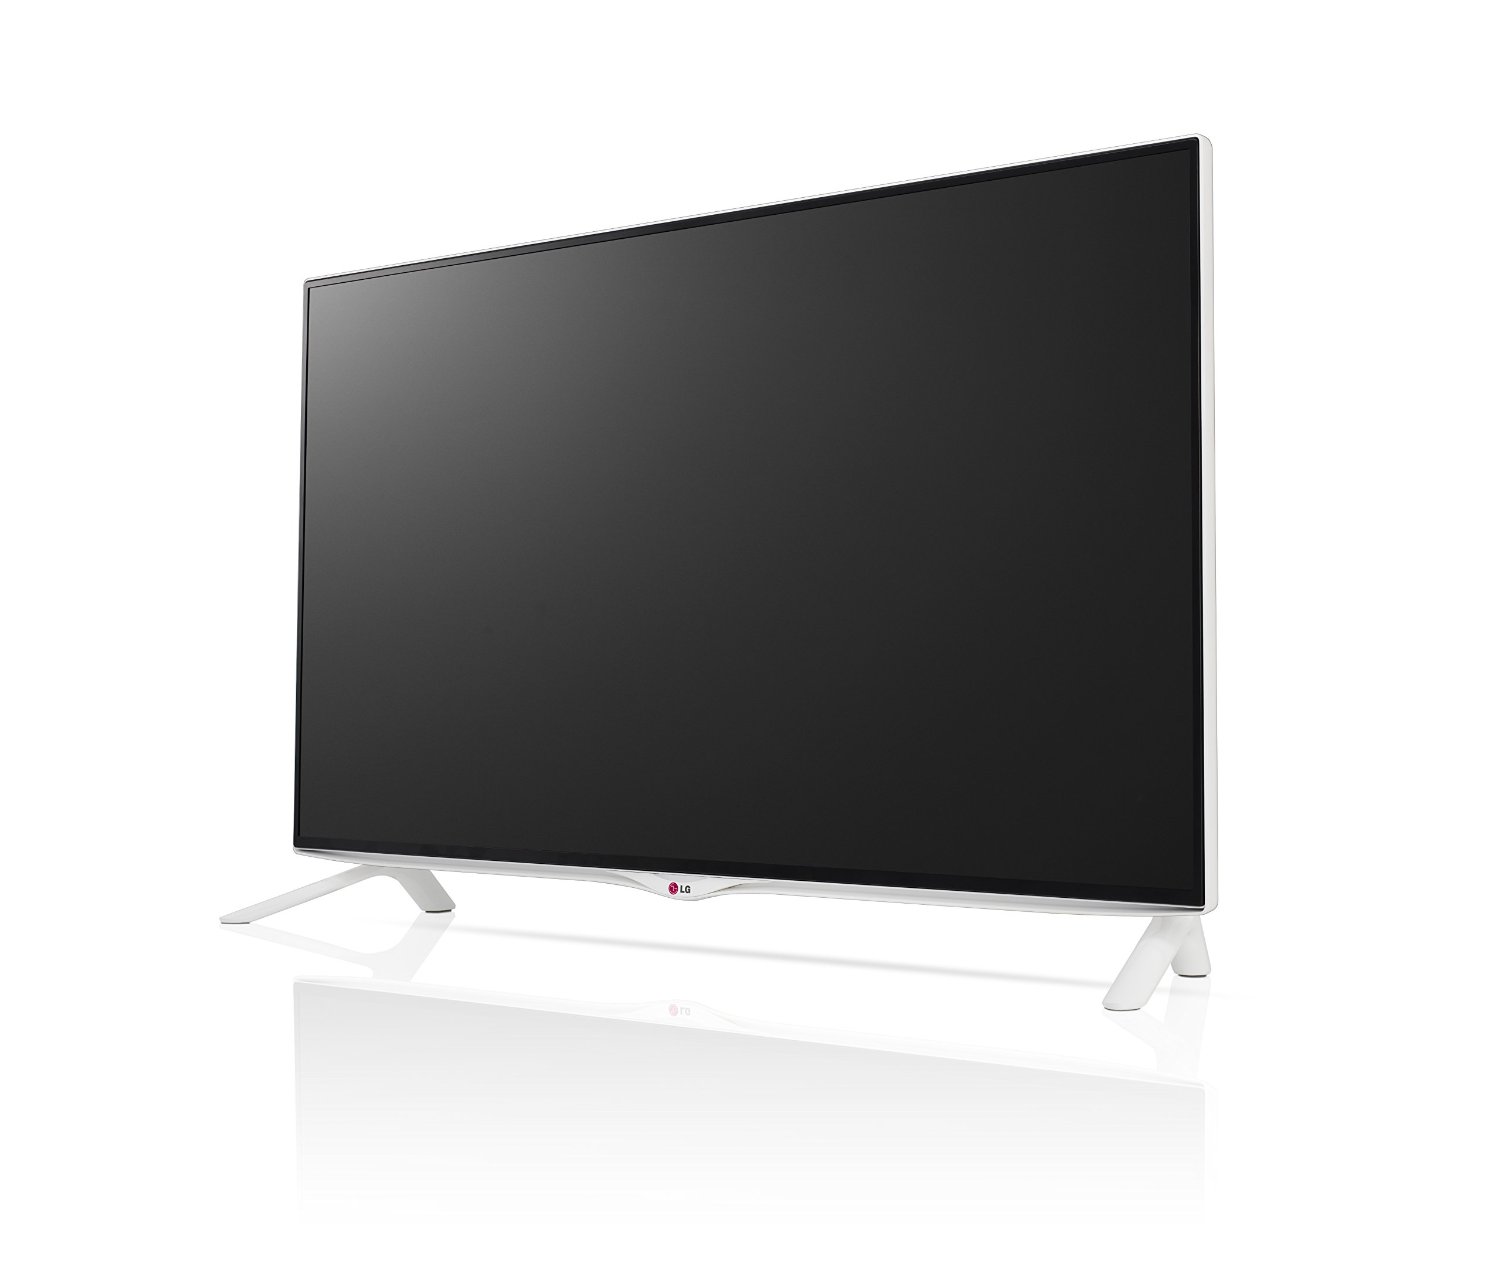 2014er 4K Fernseher von LG erhalten Update auf webOS 2.0